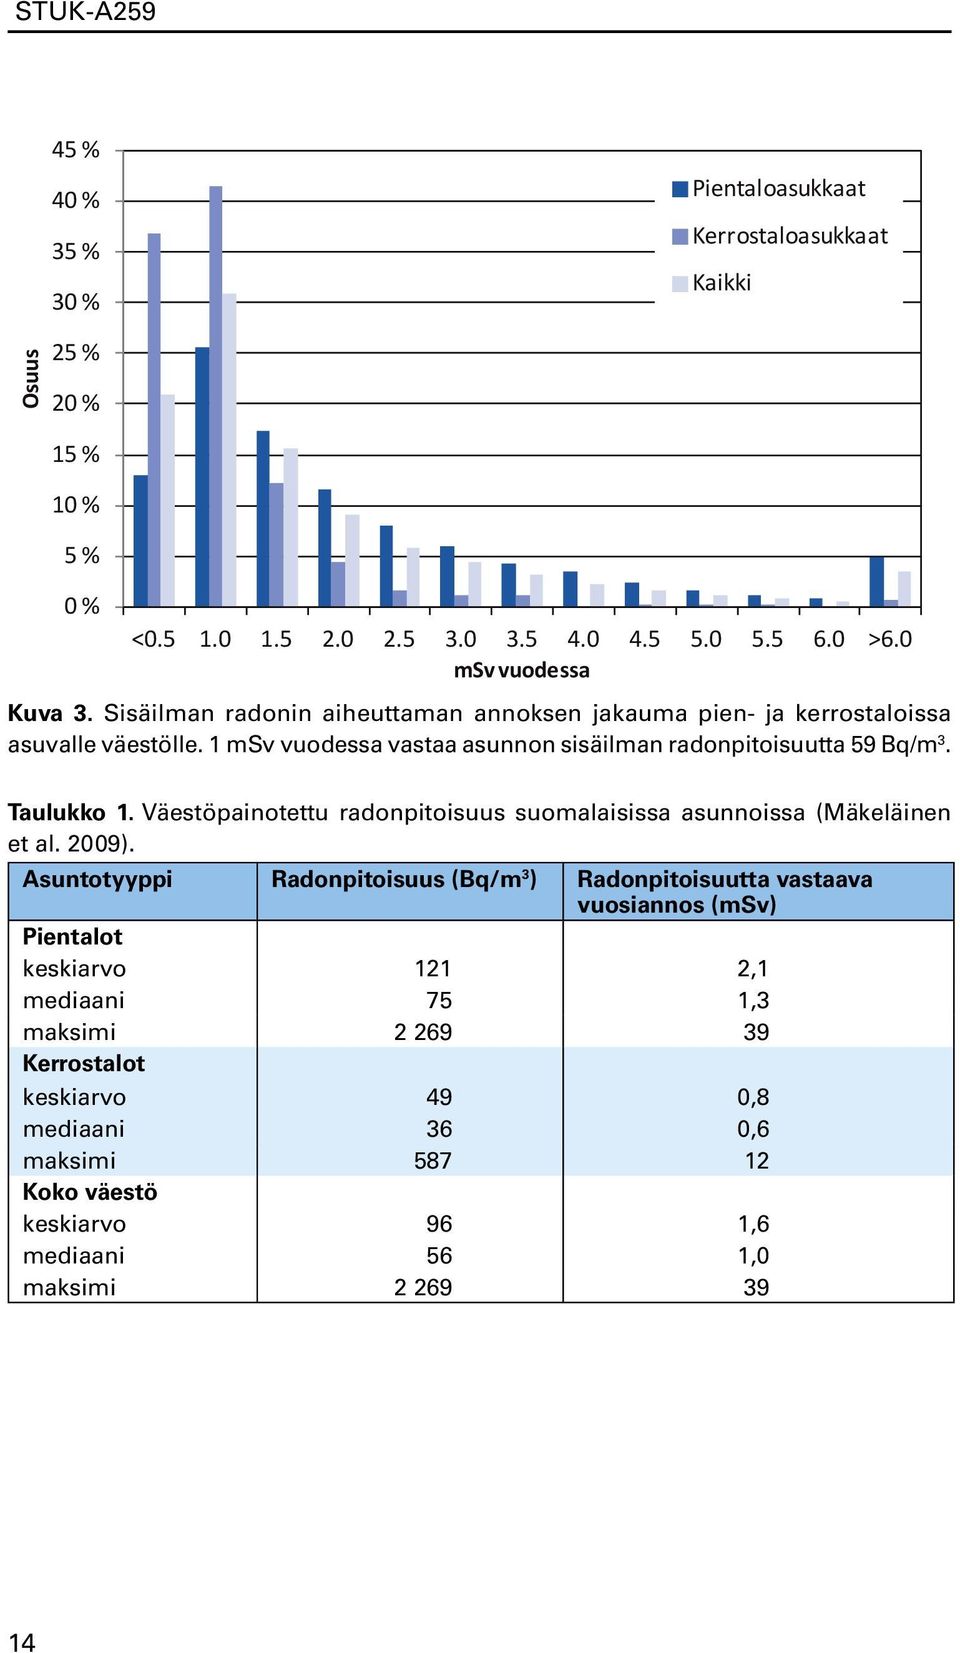 Väestöpainotettu radonpitoisuus suomalaisissa asunnoissa (Mäkeläinen et al. 2009).